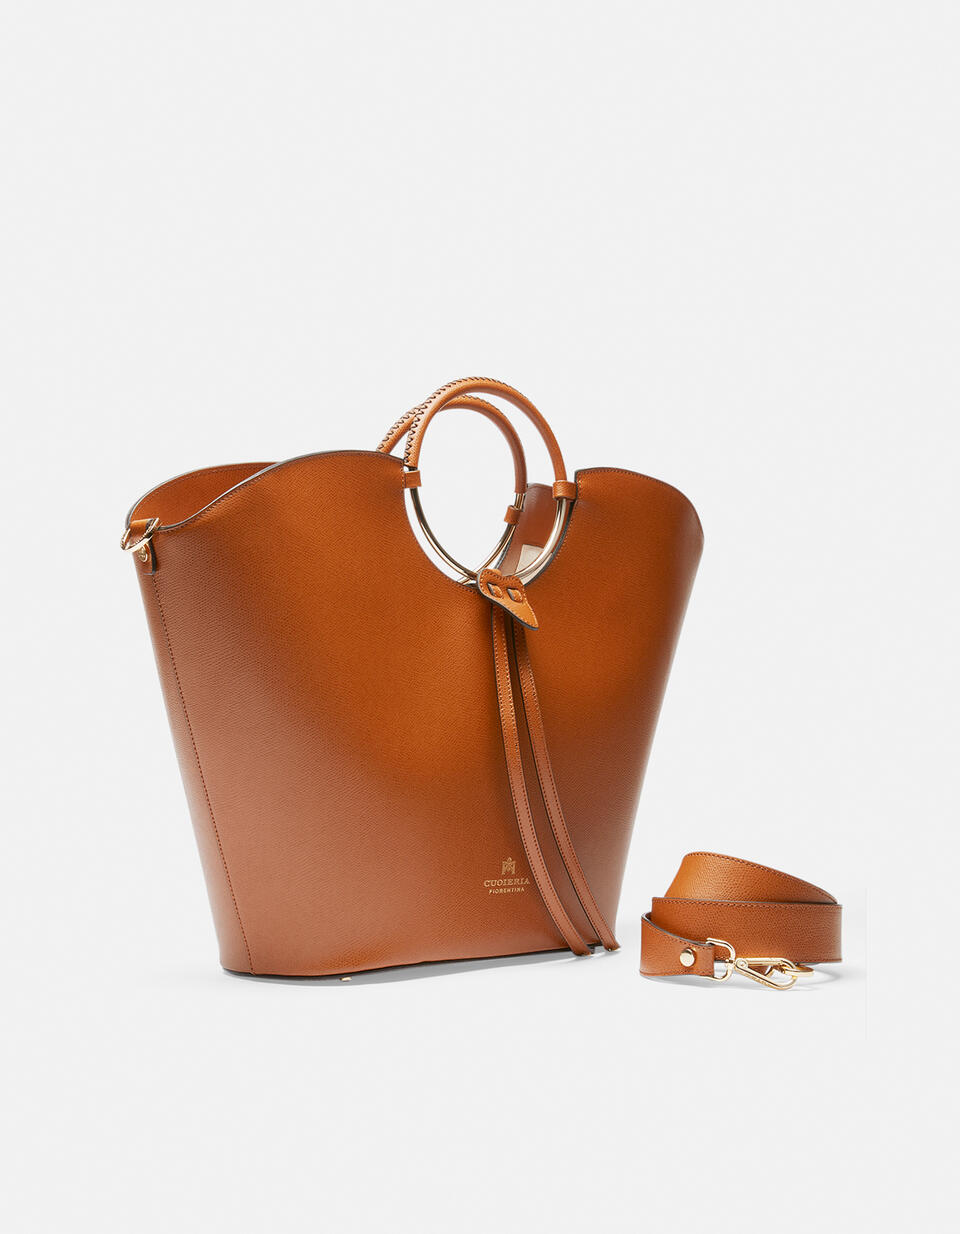 Oblò maxi bag in palmellato calf leather - TOTE BAG - WOMEN'S BAGS | bags LION - TOTE BAG - WOMEN'S BAGS | bagsCuoieria Fiorentina